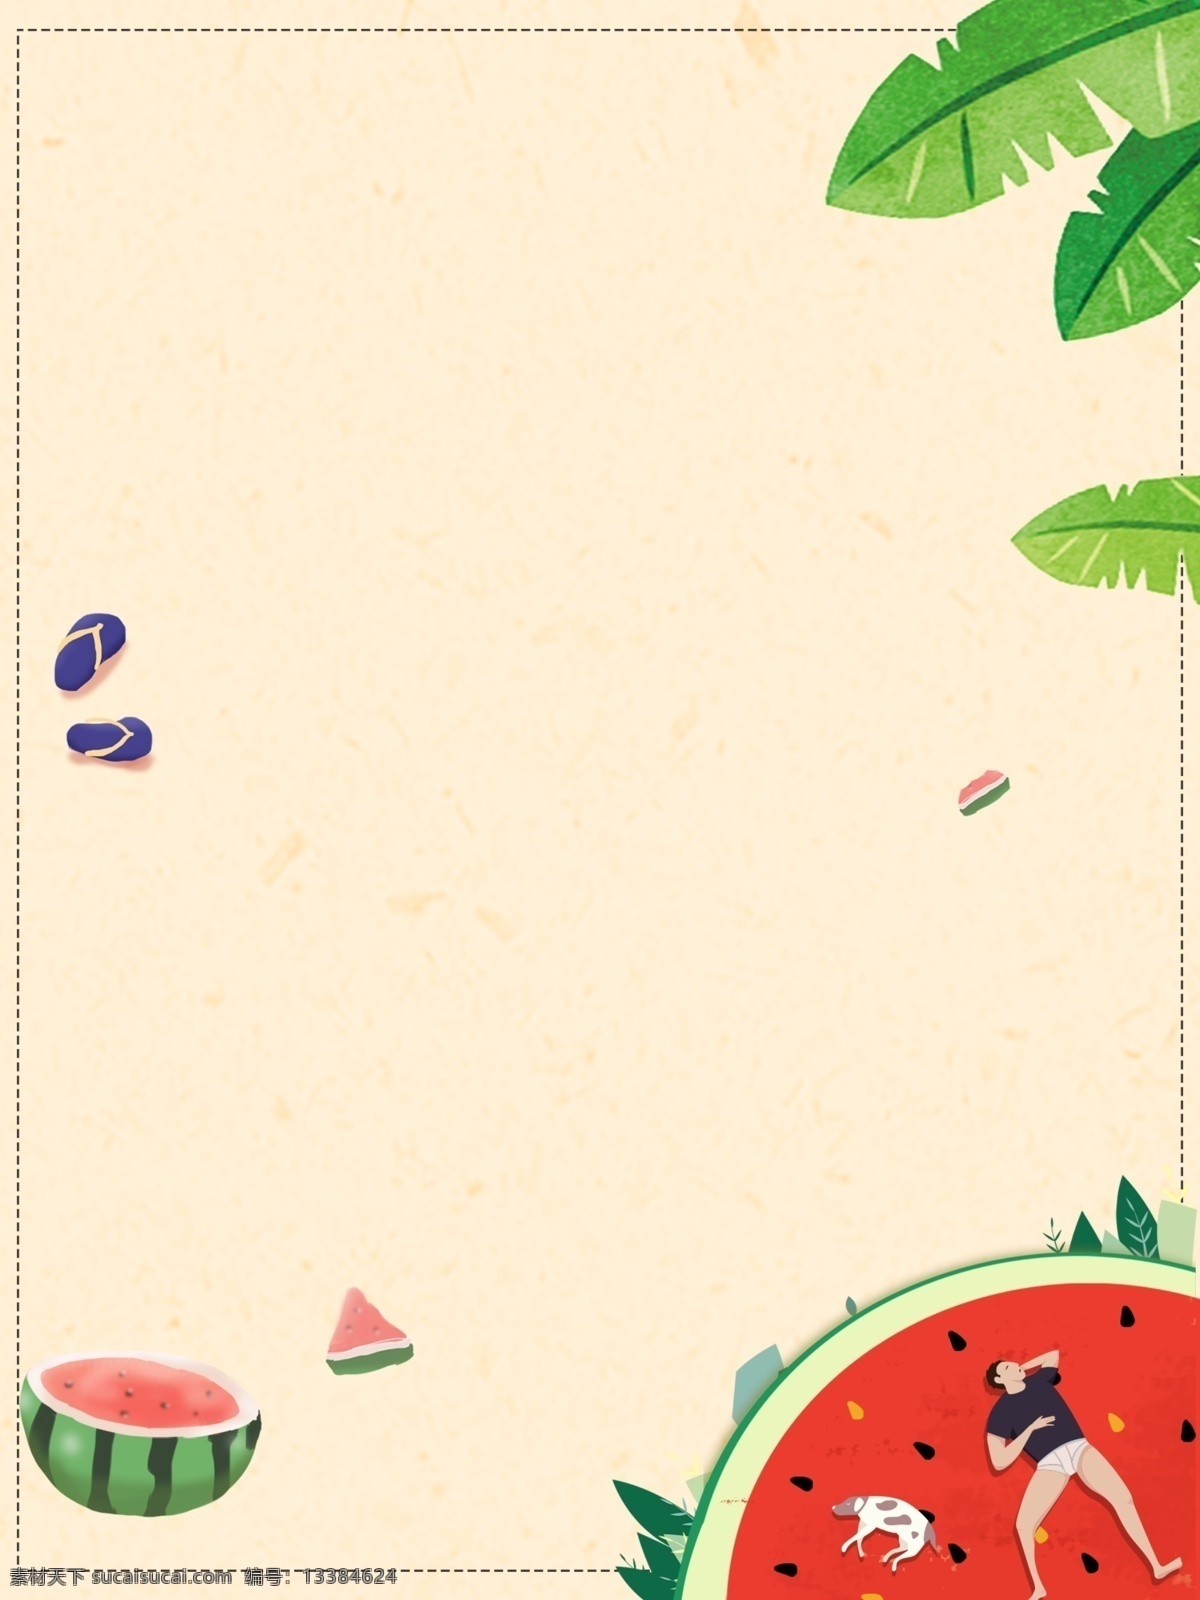 简约 夏季 水果 手绘 插画 背景 简约背景 夏季背景 水果背景 手绘背景 插画背景 西瓜背景